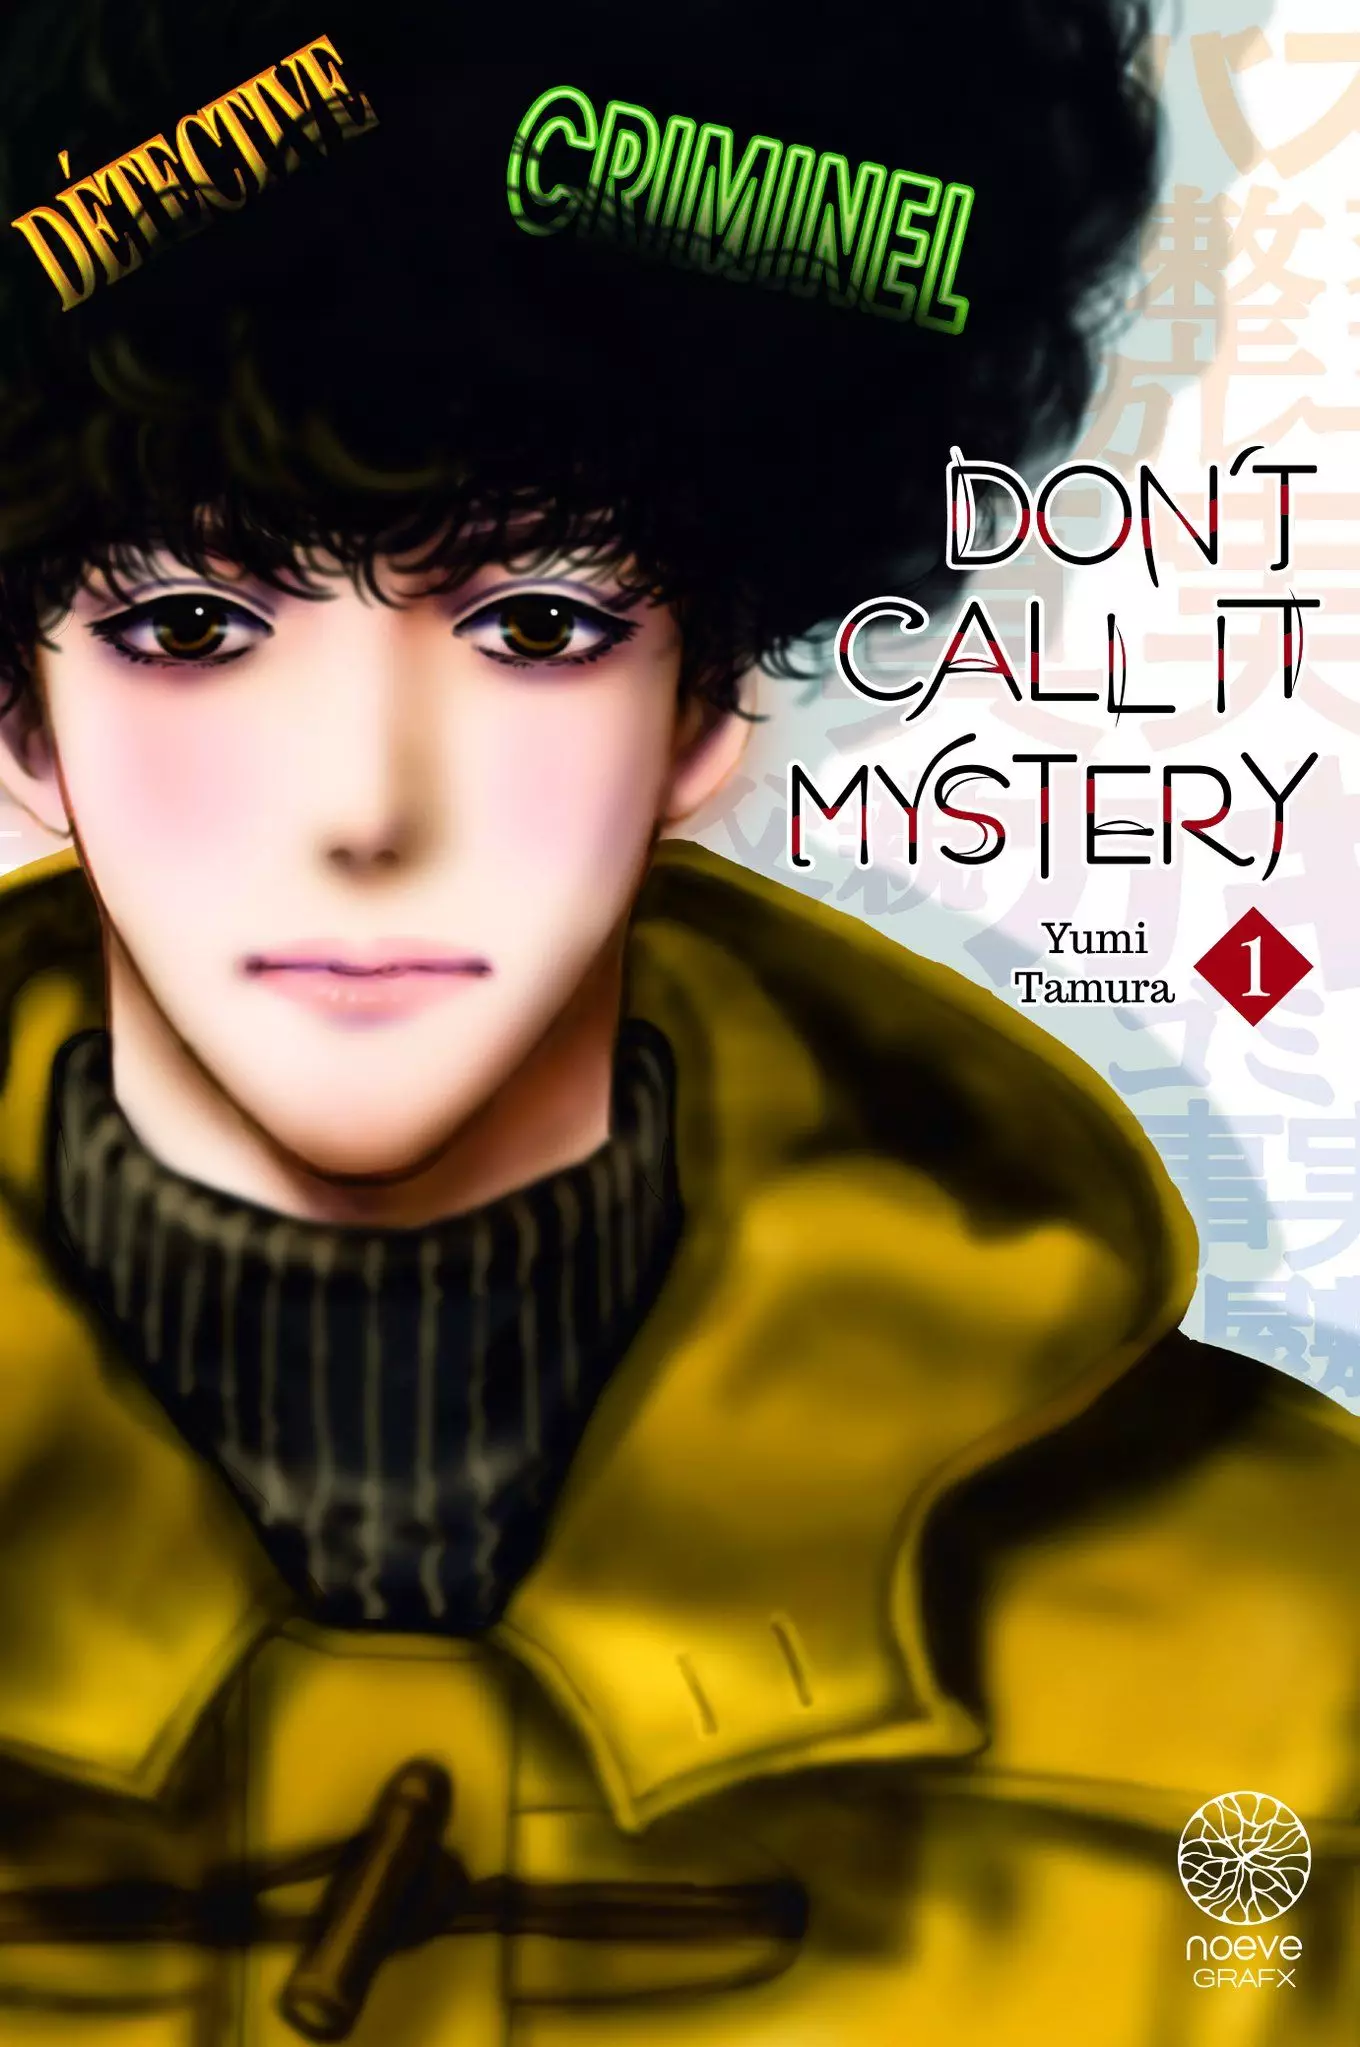 Manga - Don't call it Mystery